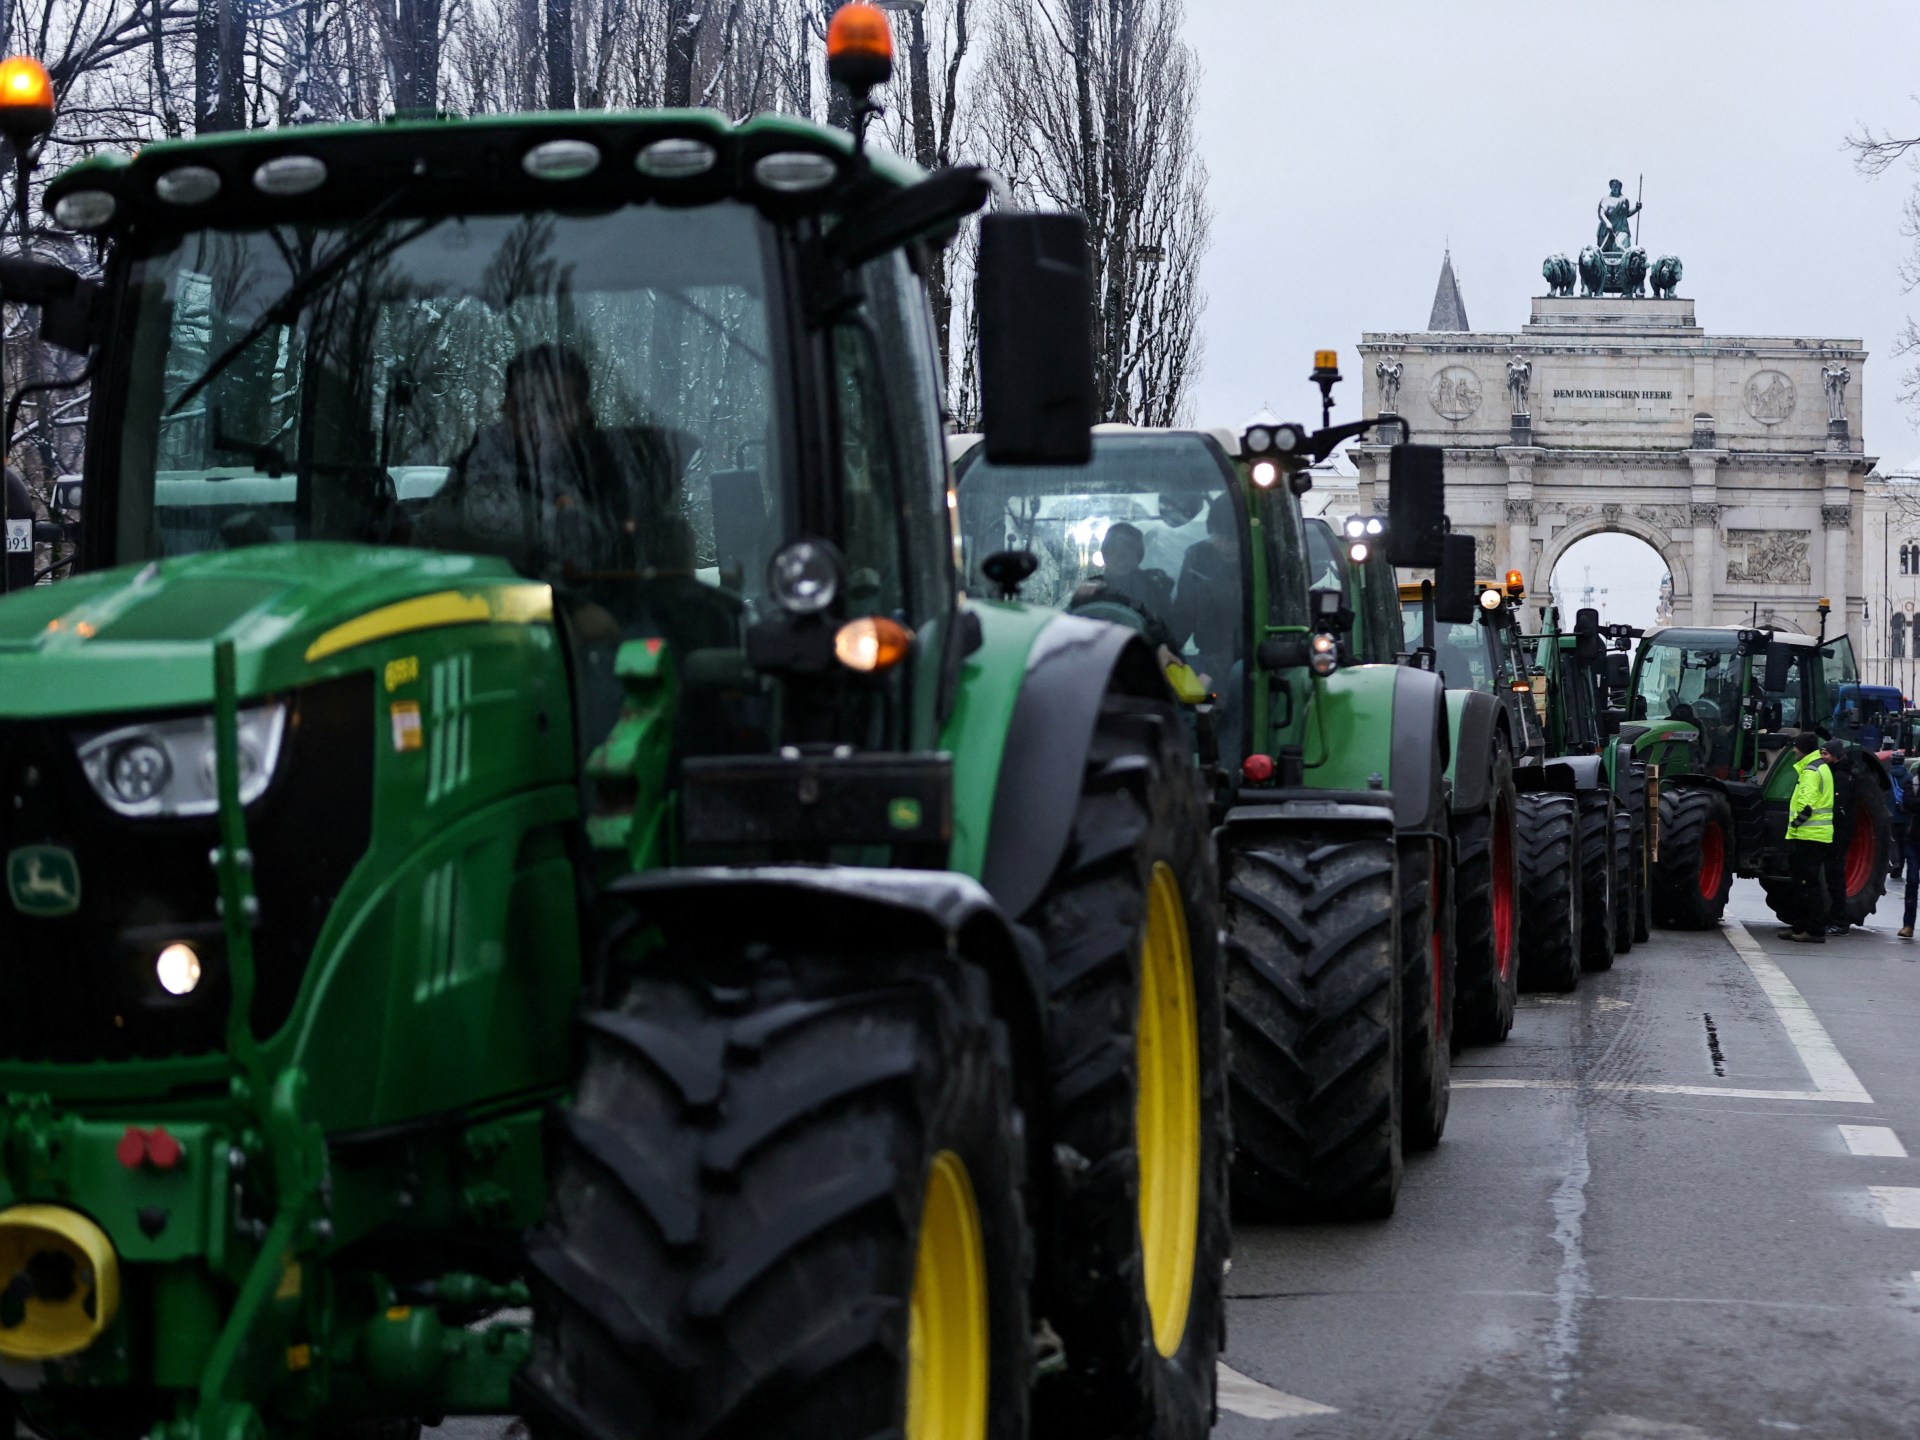 Los agricultores bloquean carreteras en toda Alemania para protestar por los recortes de subsidios  Noticias empresariales y económicas.